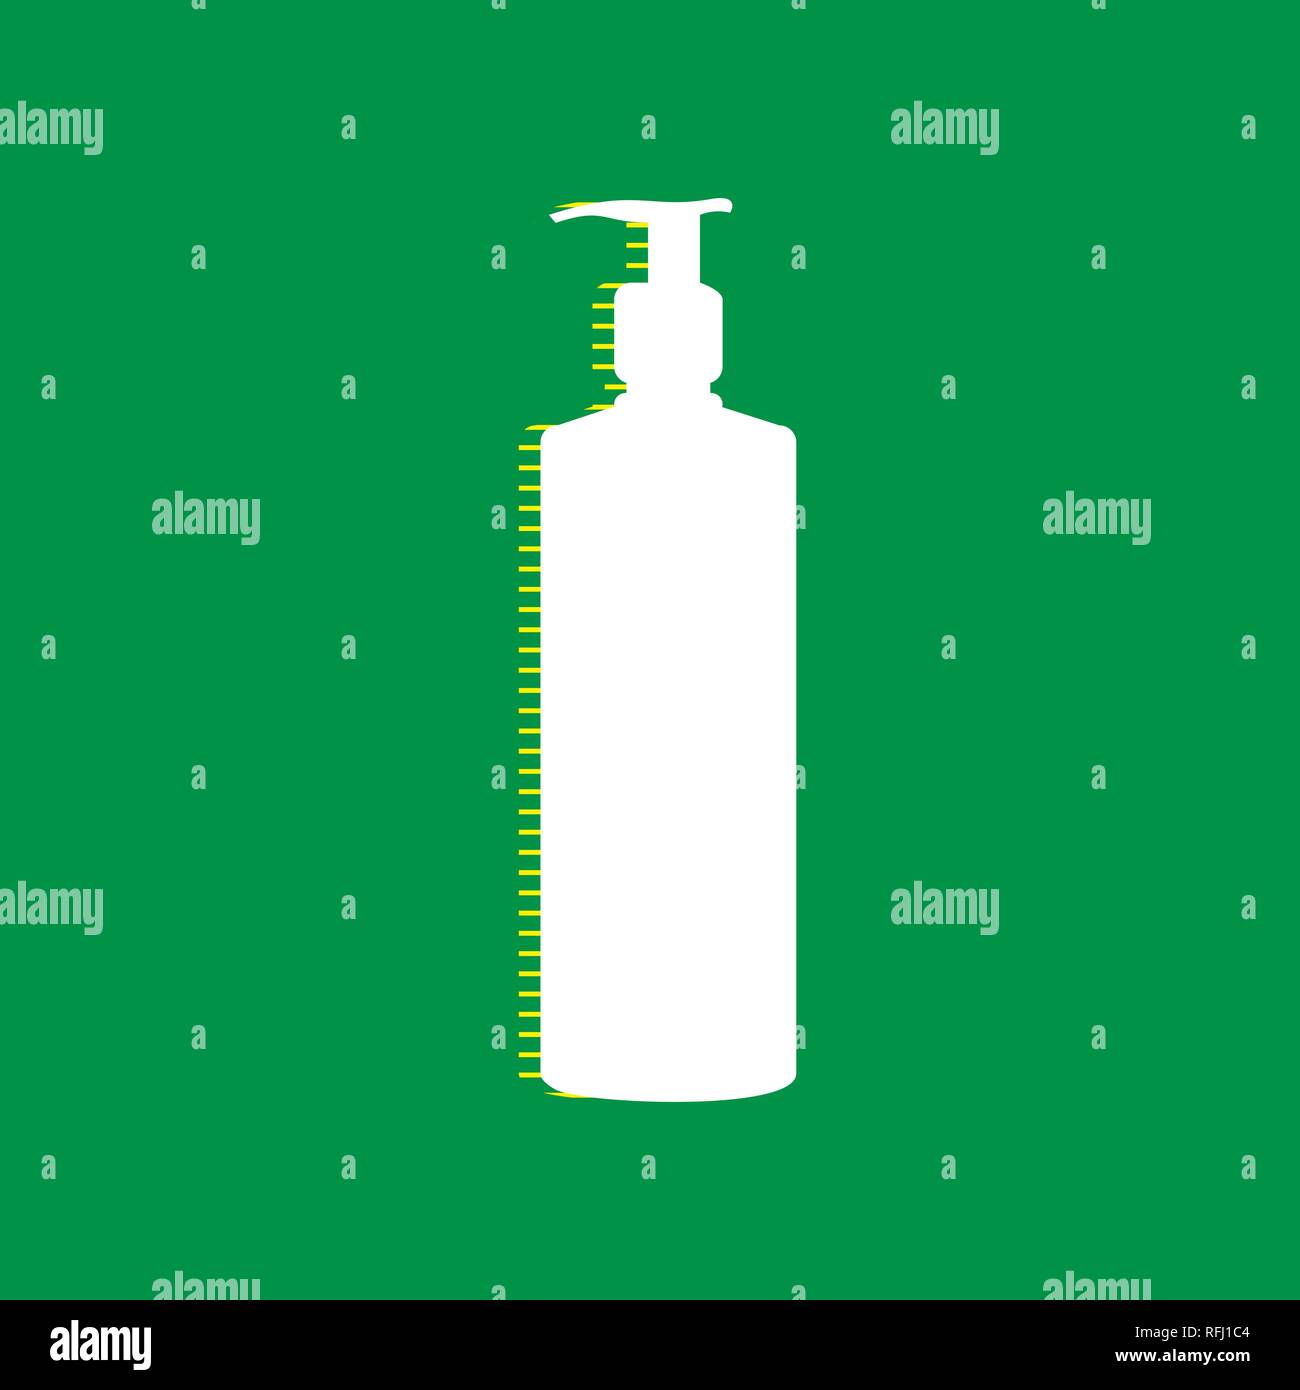 Gel, Schaum oder flüssige Seife. Dispenser Pumpe Plastikflasche Silhouette. Vektor. Weißen flachen Symbol mit gelb gestreiften Schatten auf grünem Hintergrund. Stock Vektor